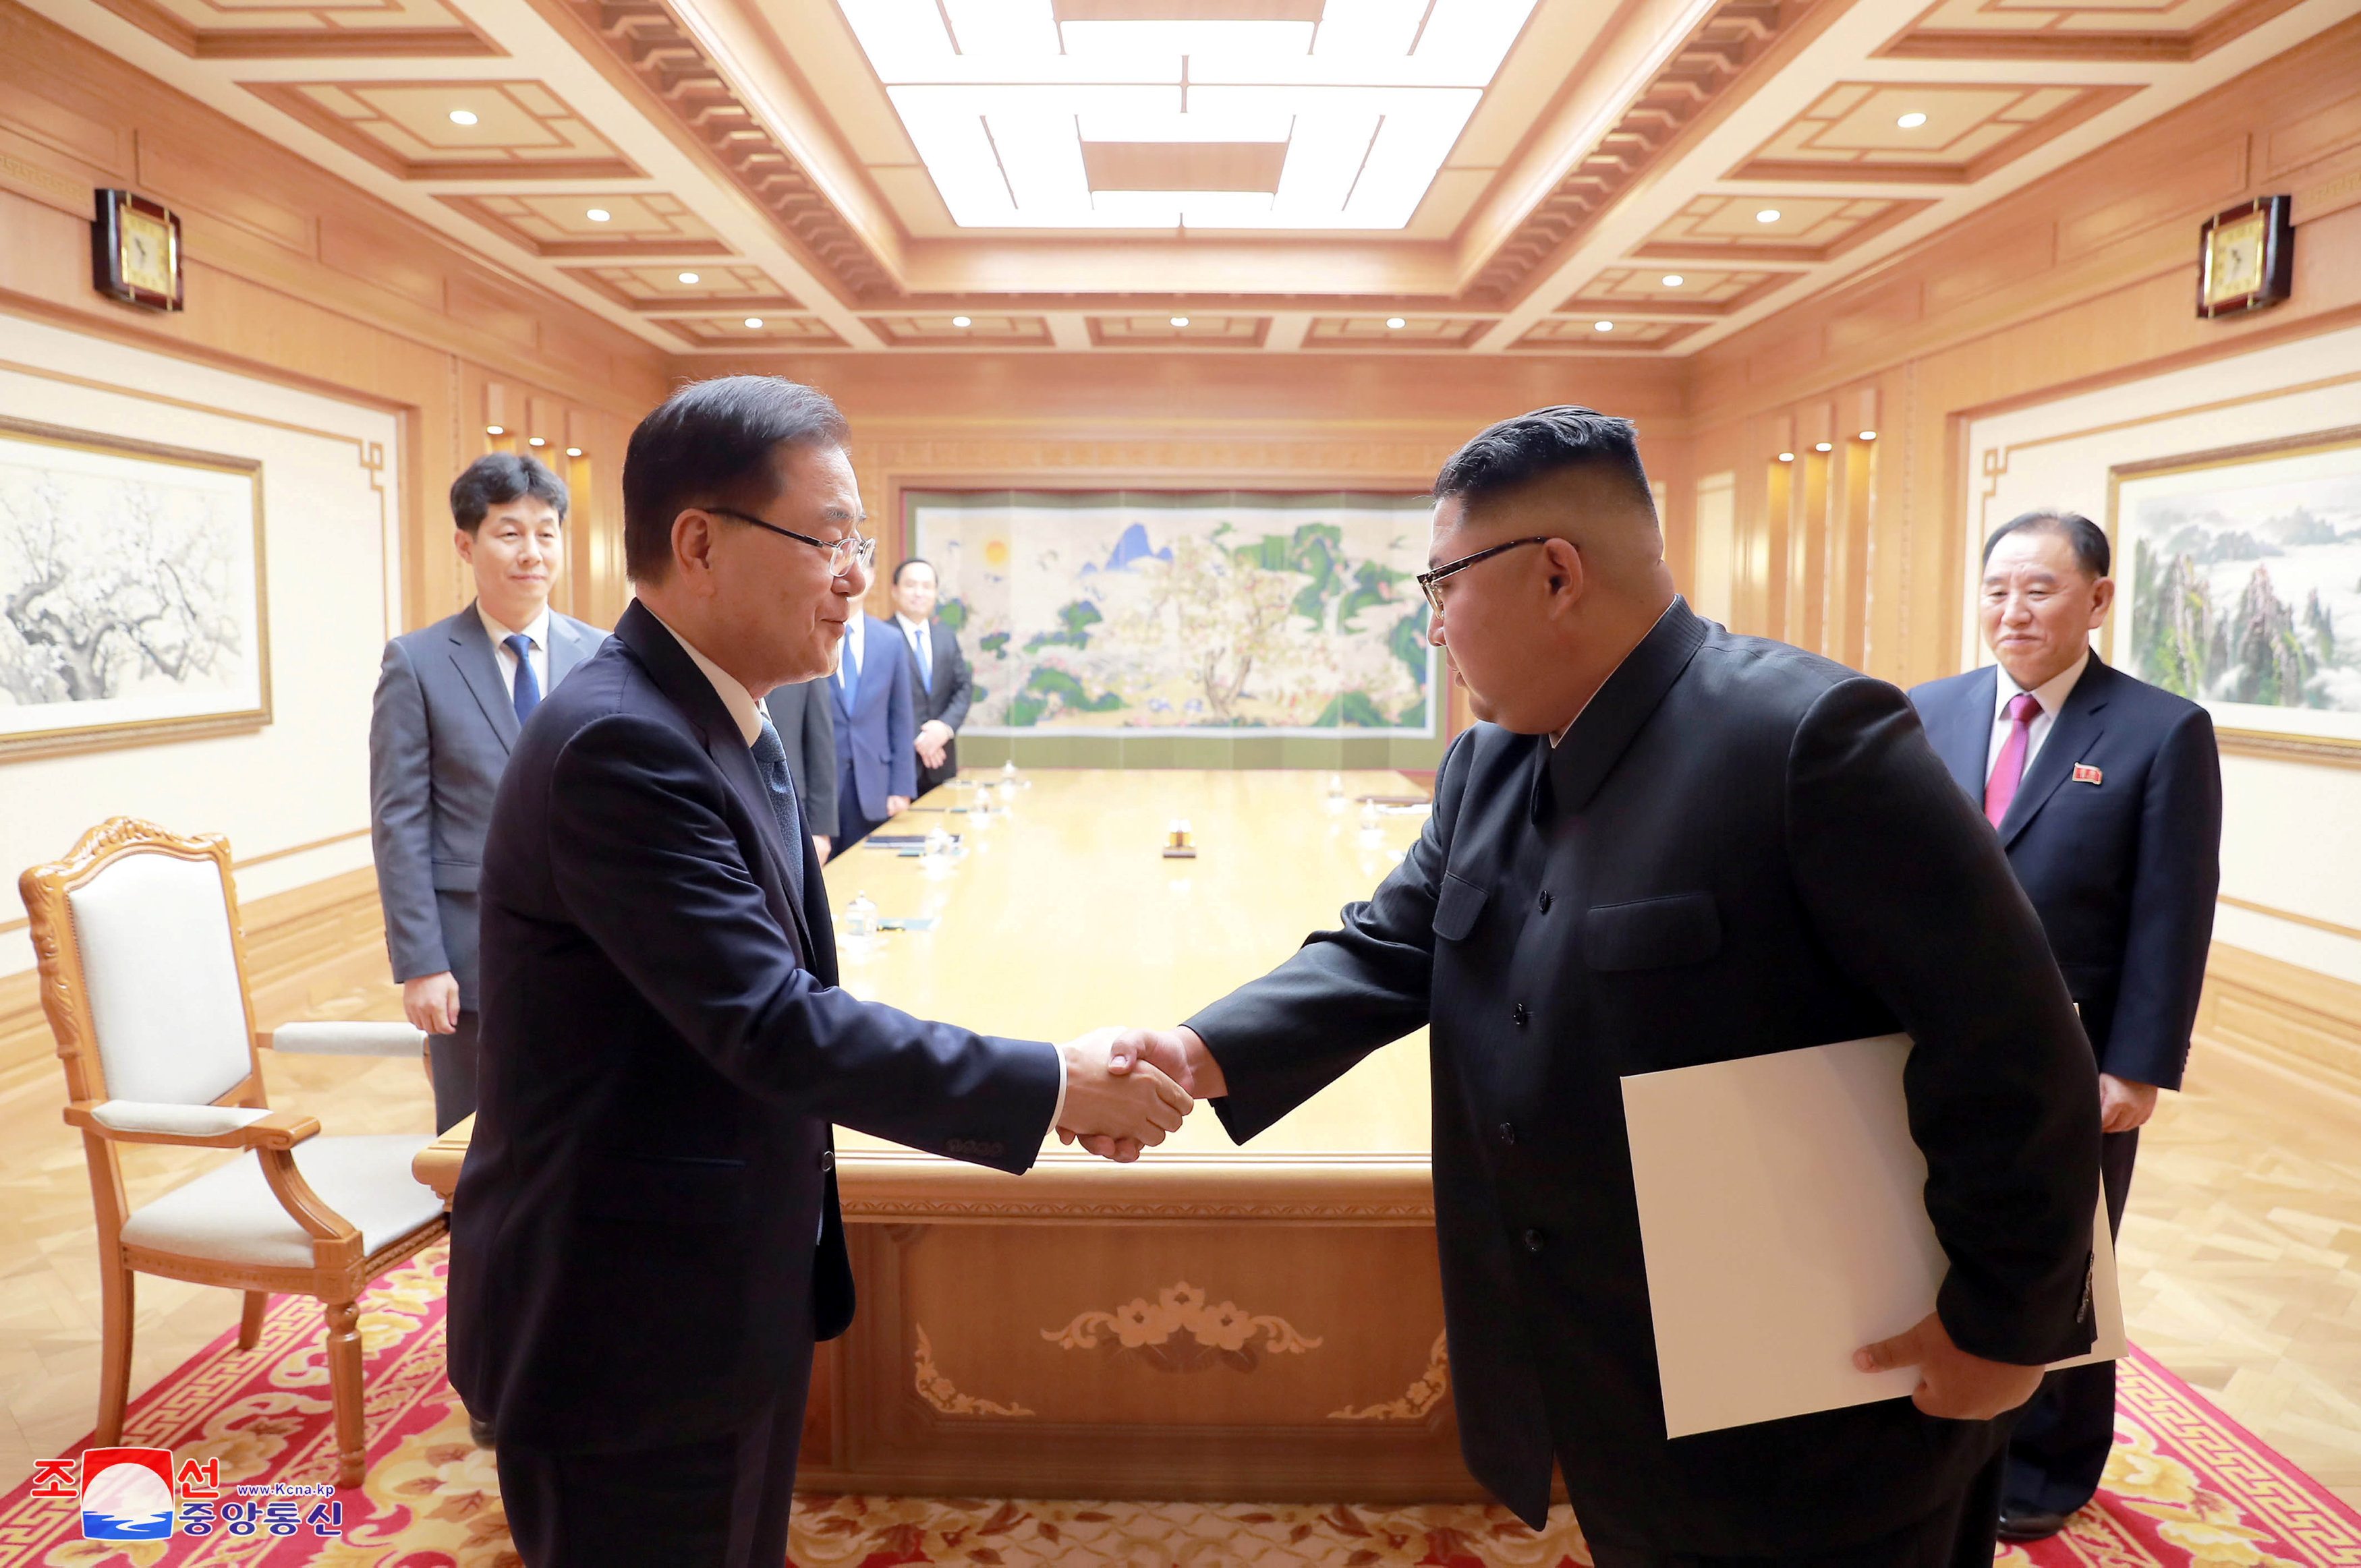 زعيم كوريا الشمالية مع مبعوث كوريا الجنوبية